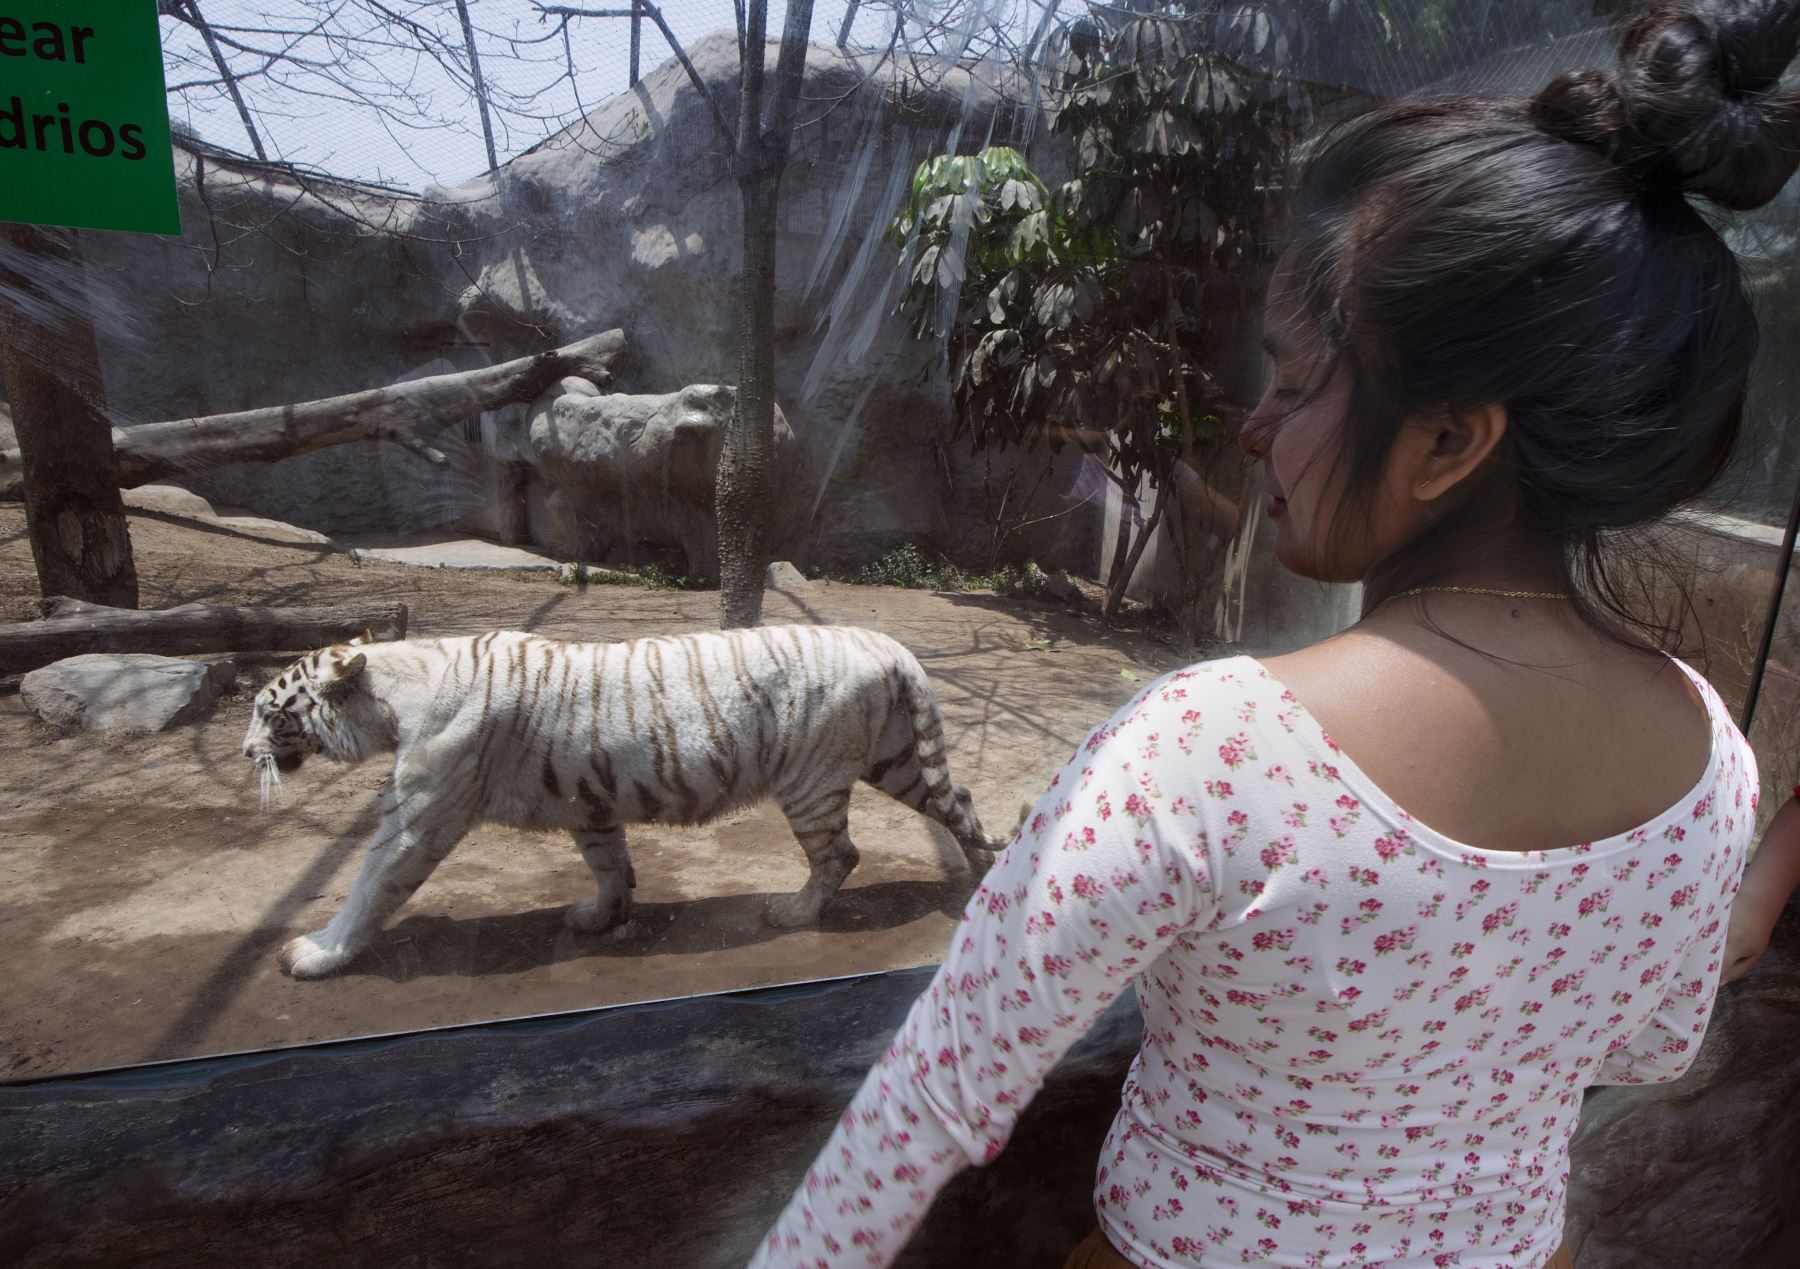 Una mujer mira a Civa, el tigre de Bengala blanco de cinco años de edad, en el zoológico de Huachipa, donde nació, en las afueras del este de Lima. Civa es uno de los seis tigres de Bengala blancos adultos en el zoológico. . Su especie, originaria del norte de la India, está clasificada como en peligro de extinción.
 AFP